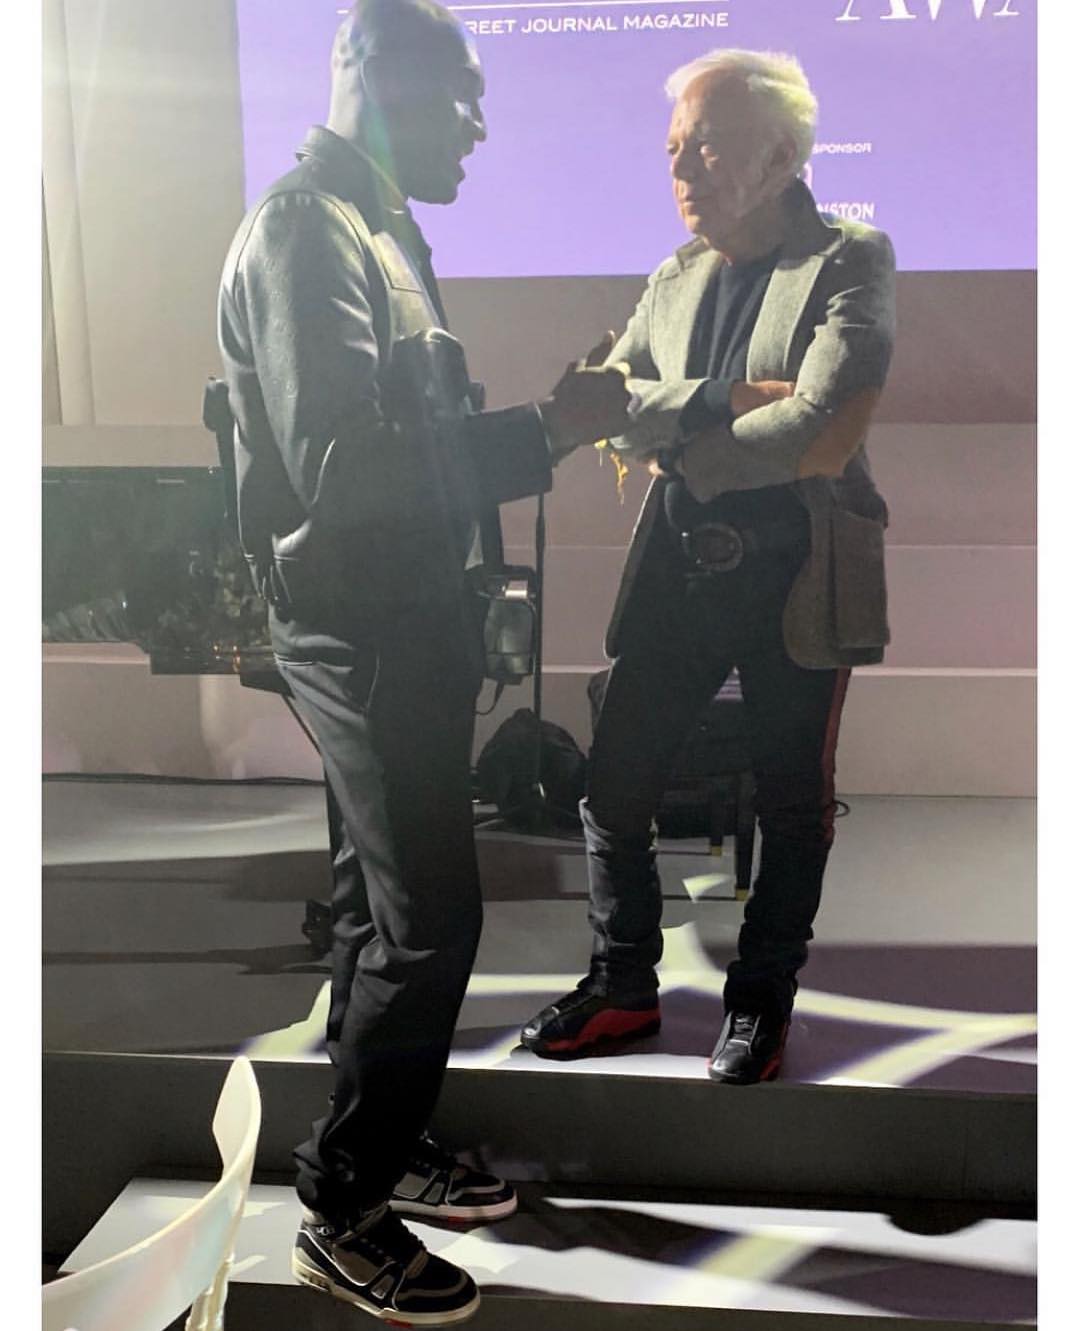 SPOTTED: Virgil Abloh & Ralph Lauren in LV Mens 2019 & Air Jordan